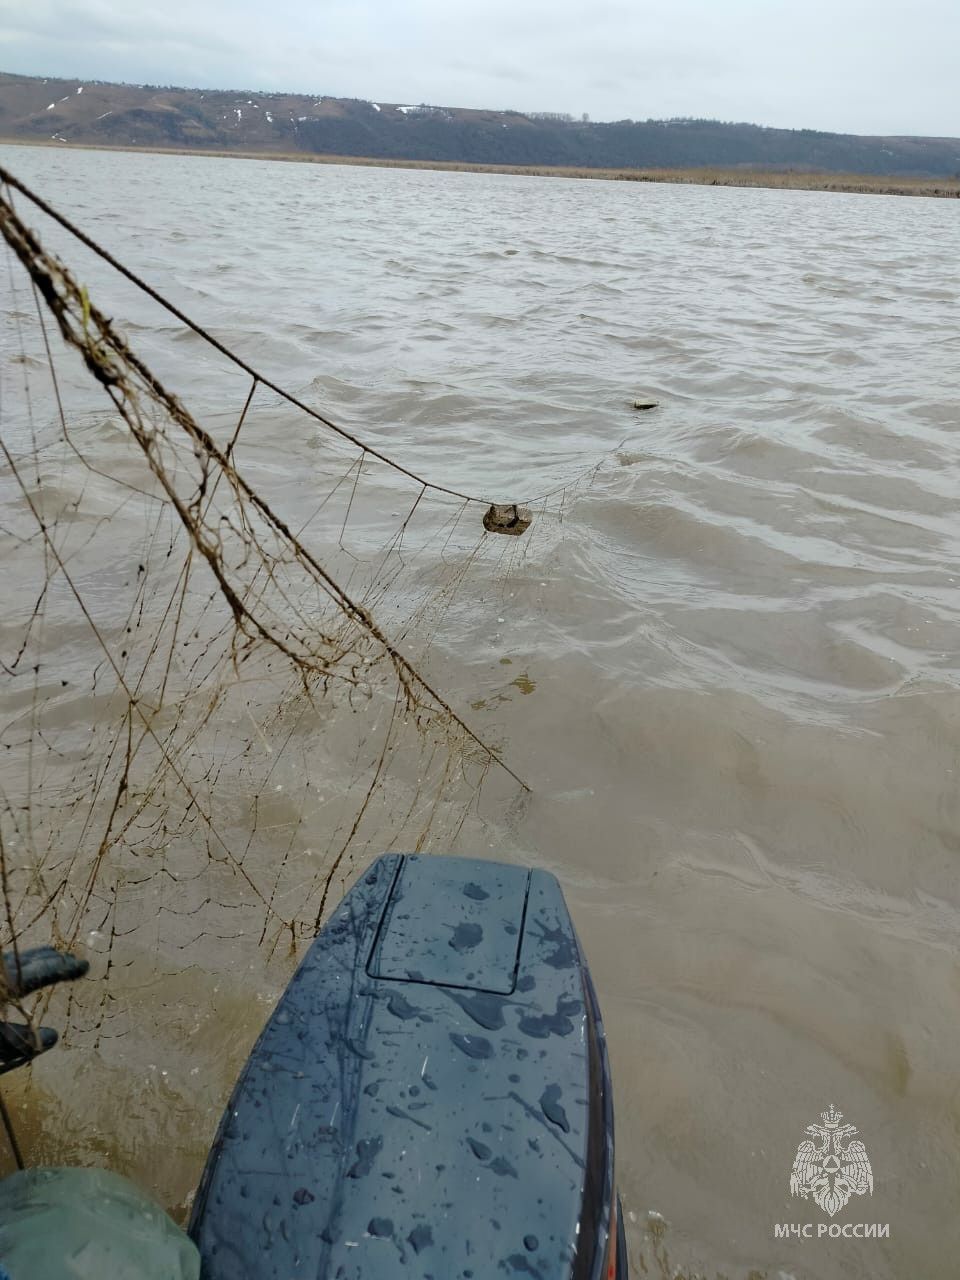 Спасатели обследовали 15 км прибрежной зоны на реке Свияга в поисках пропавших рыбаков